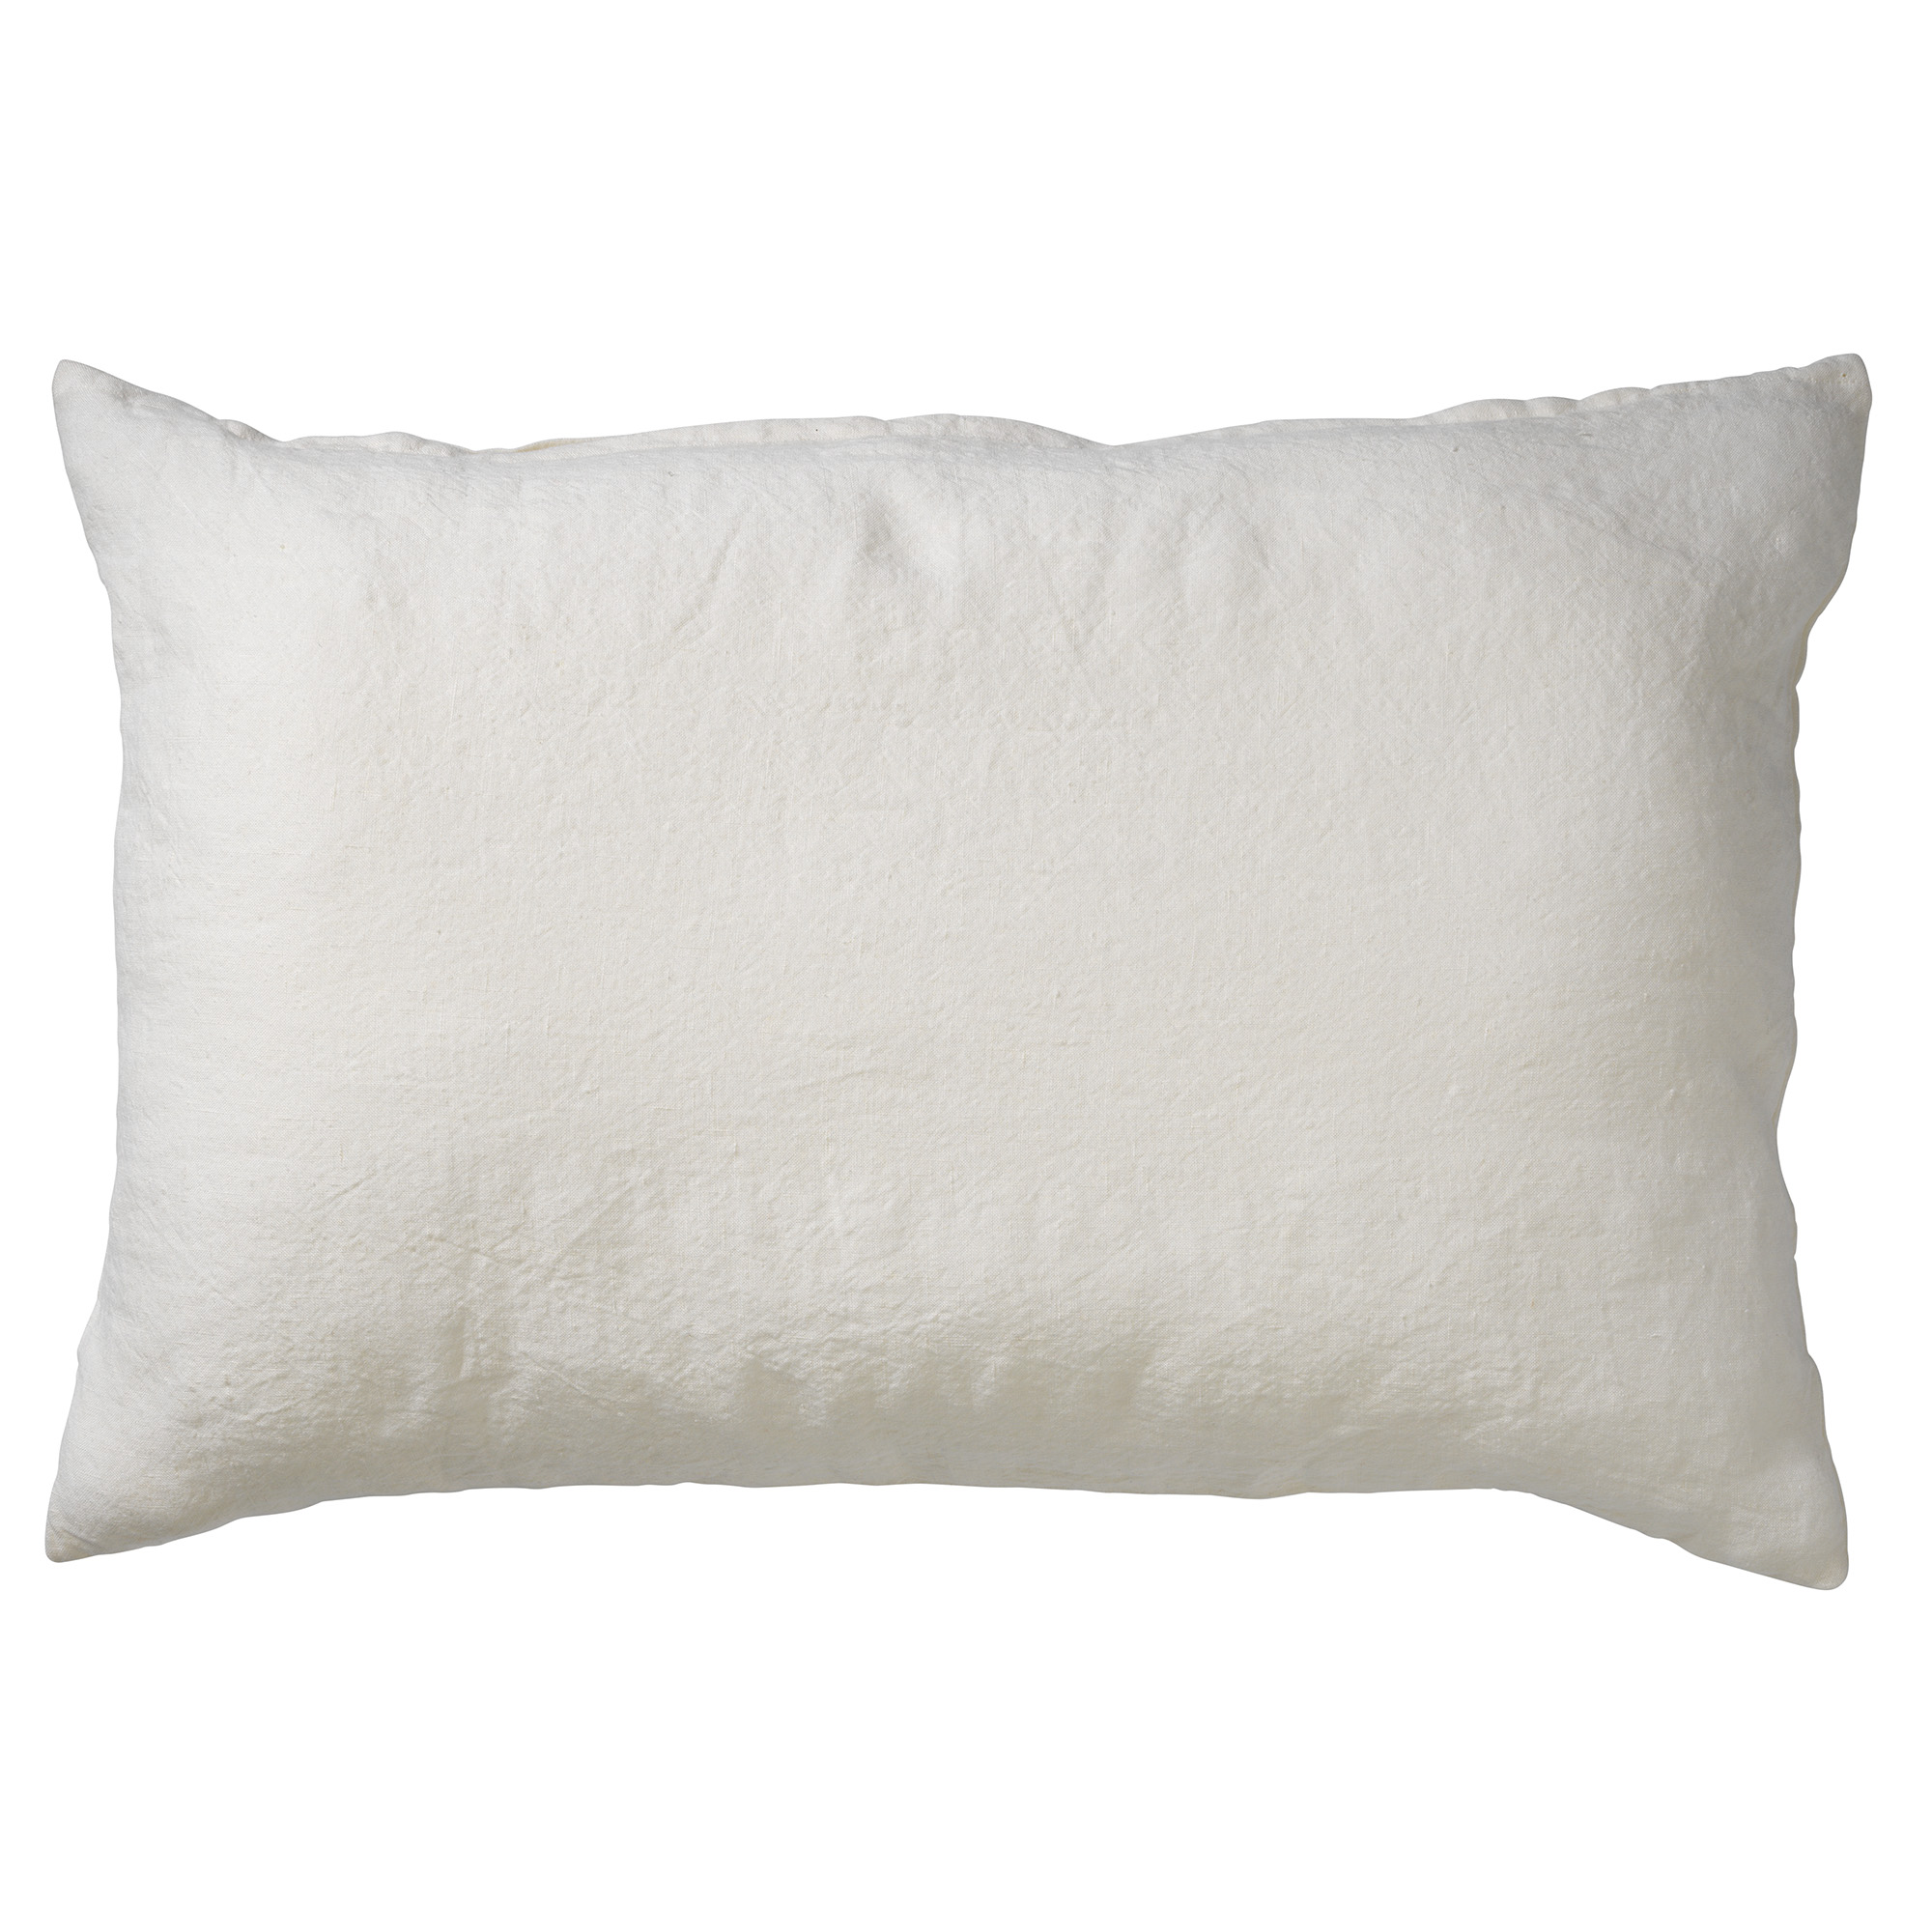 LINN - Cushion cover 40x60 cm Snow White - off-white